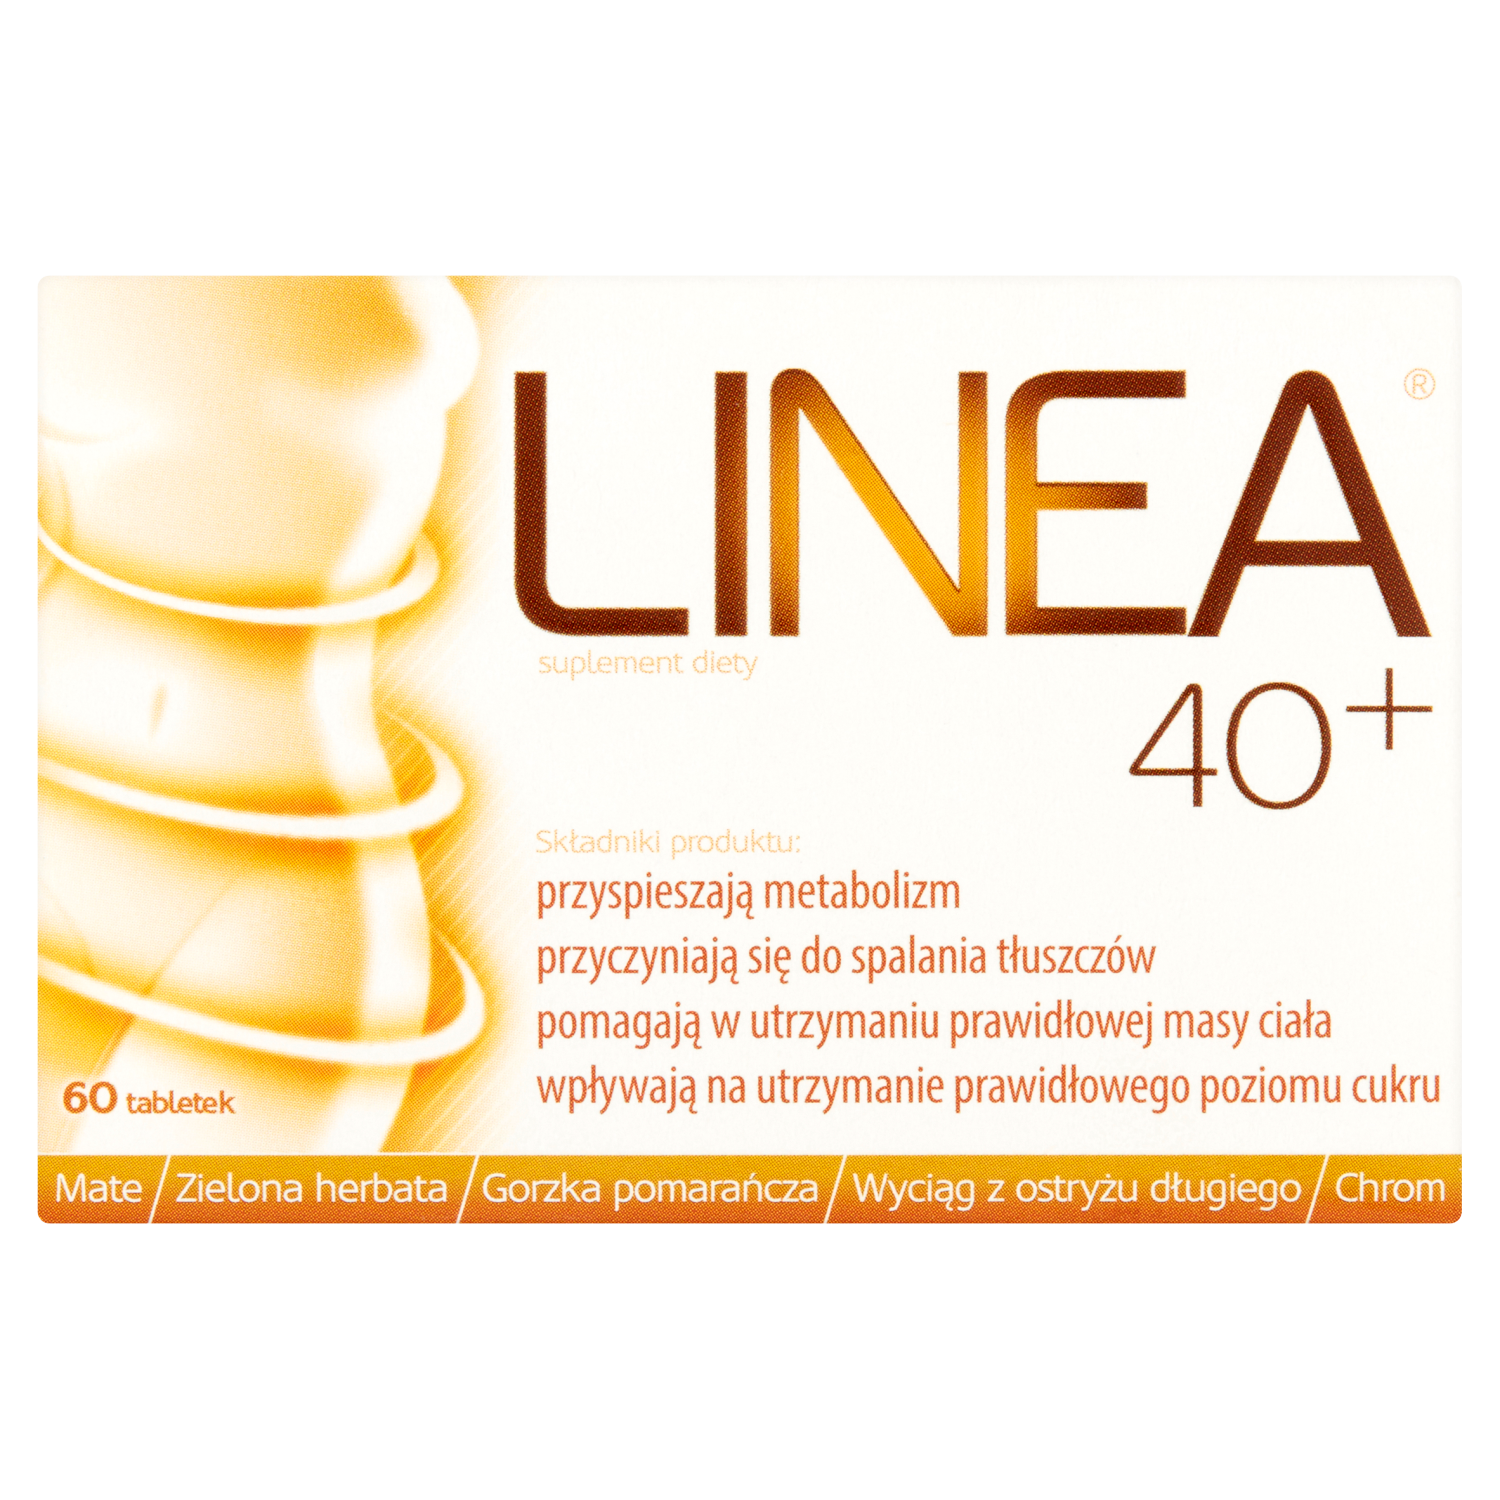 liporedium биологически активная добавка 60 таблеток 1 упаковка Linea 40+ биологически активная добавка, 60 таблеток/1 упаковка